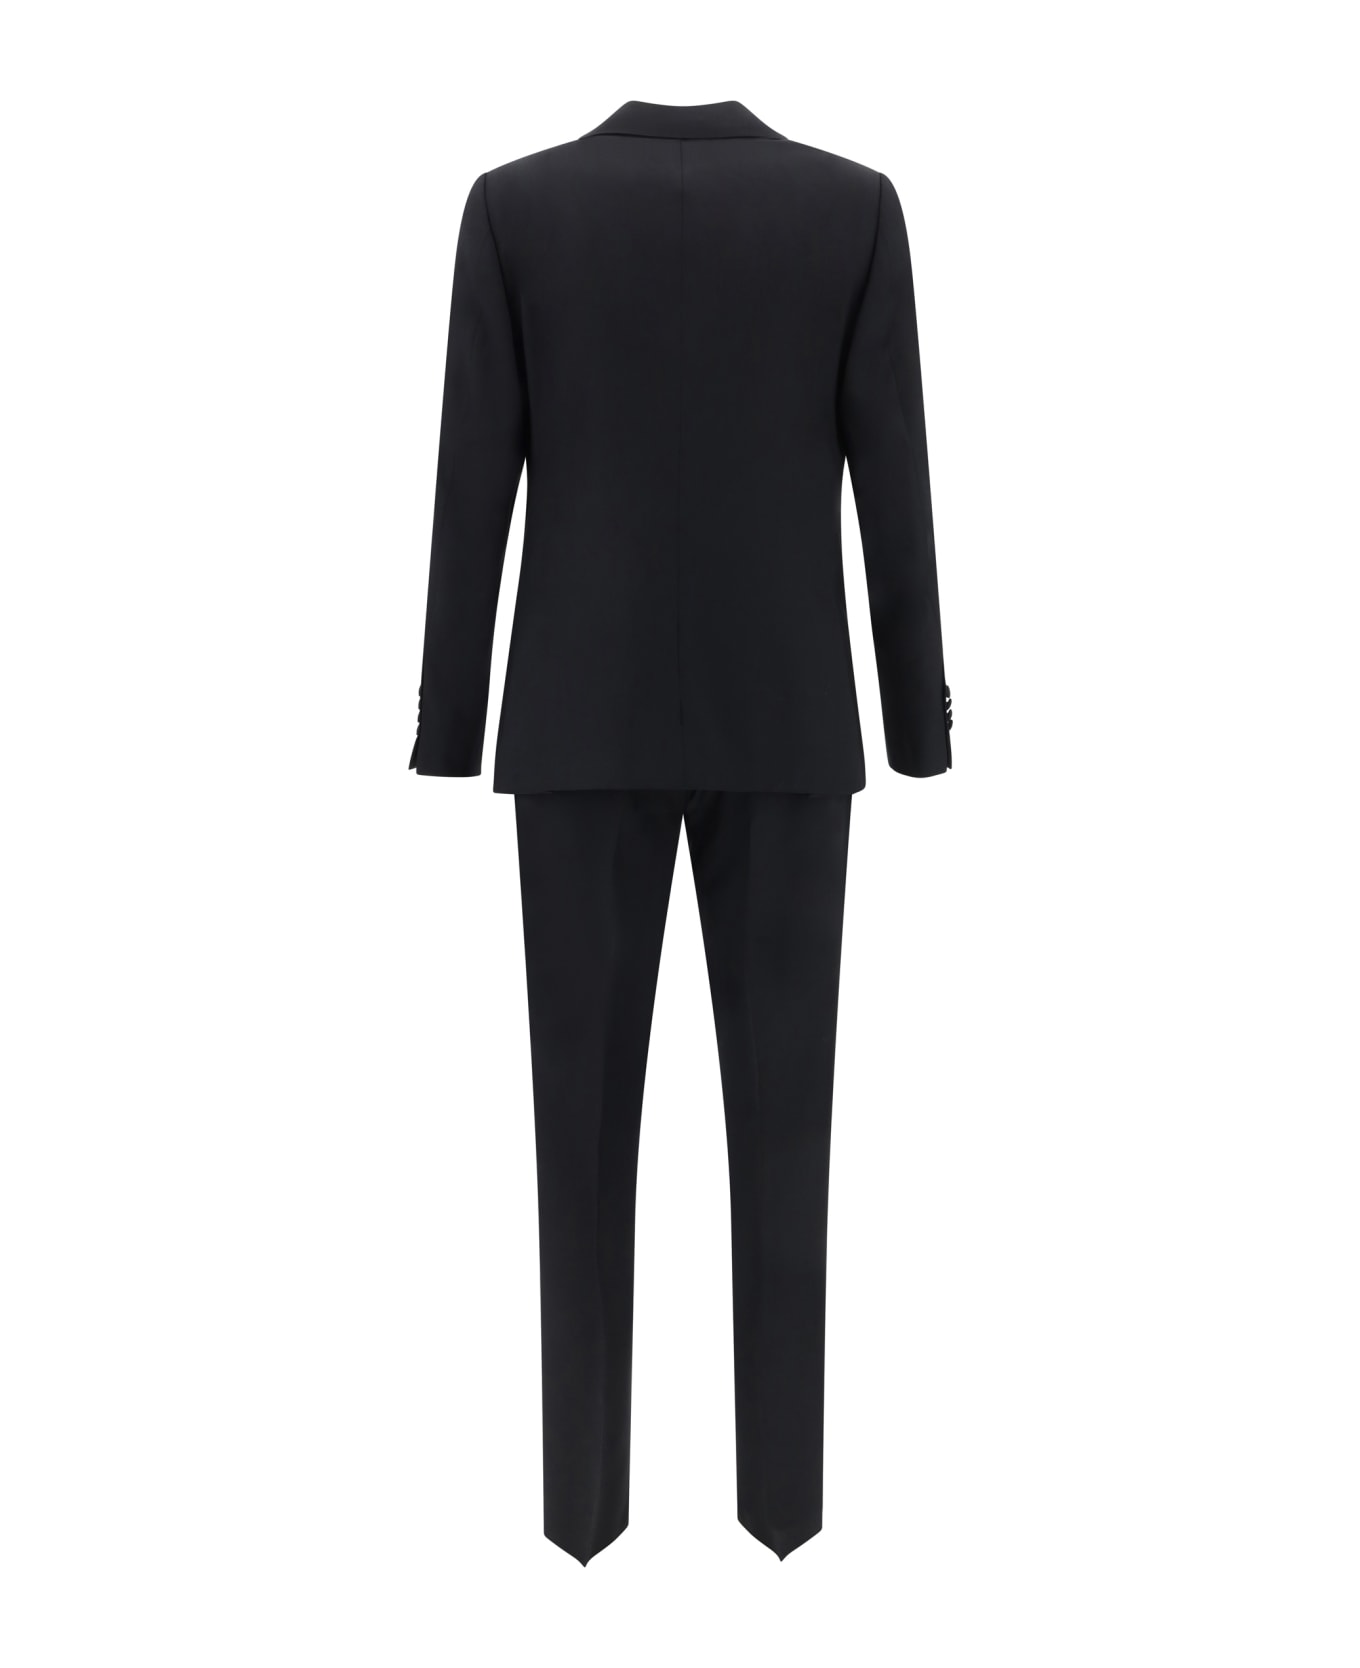 Lardini Tailoring Suit - 4 スーツ